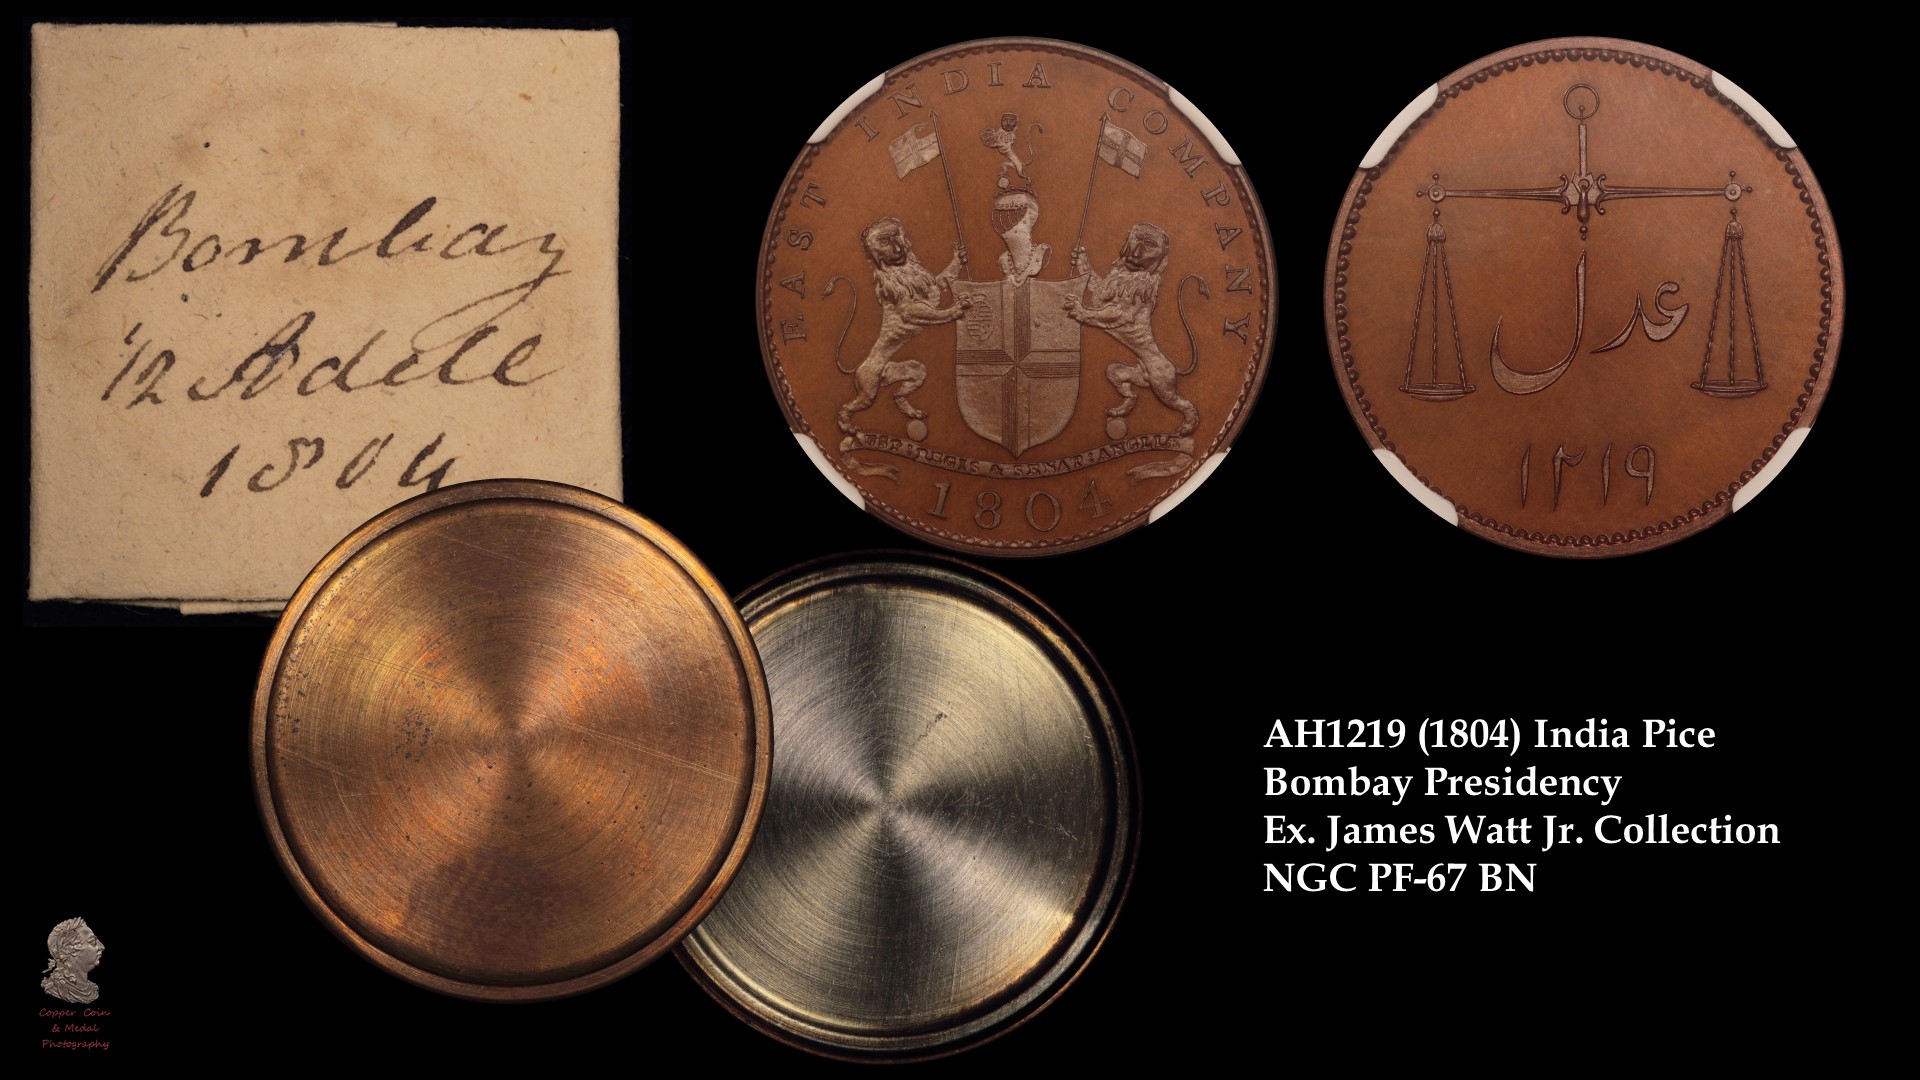 1804 (AH1219) India Pice Bombay Presidency Ex James Watt Jr. PF-67 BN 4494270004 EDITED.jpg